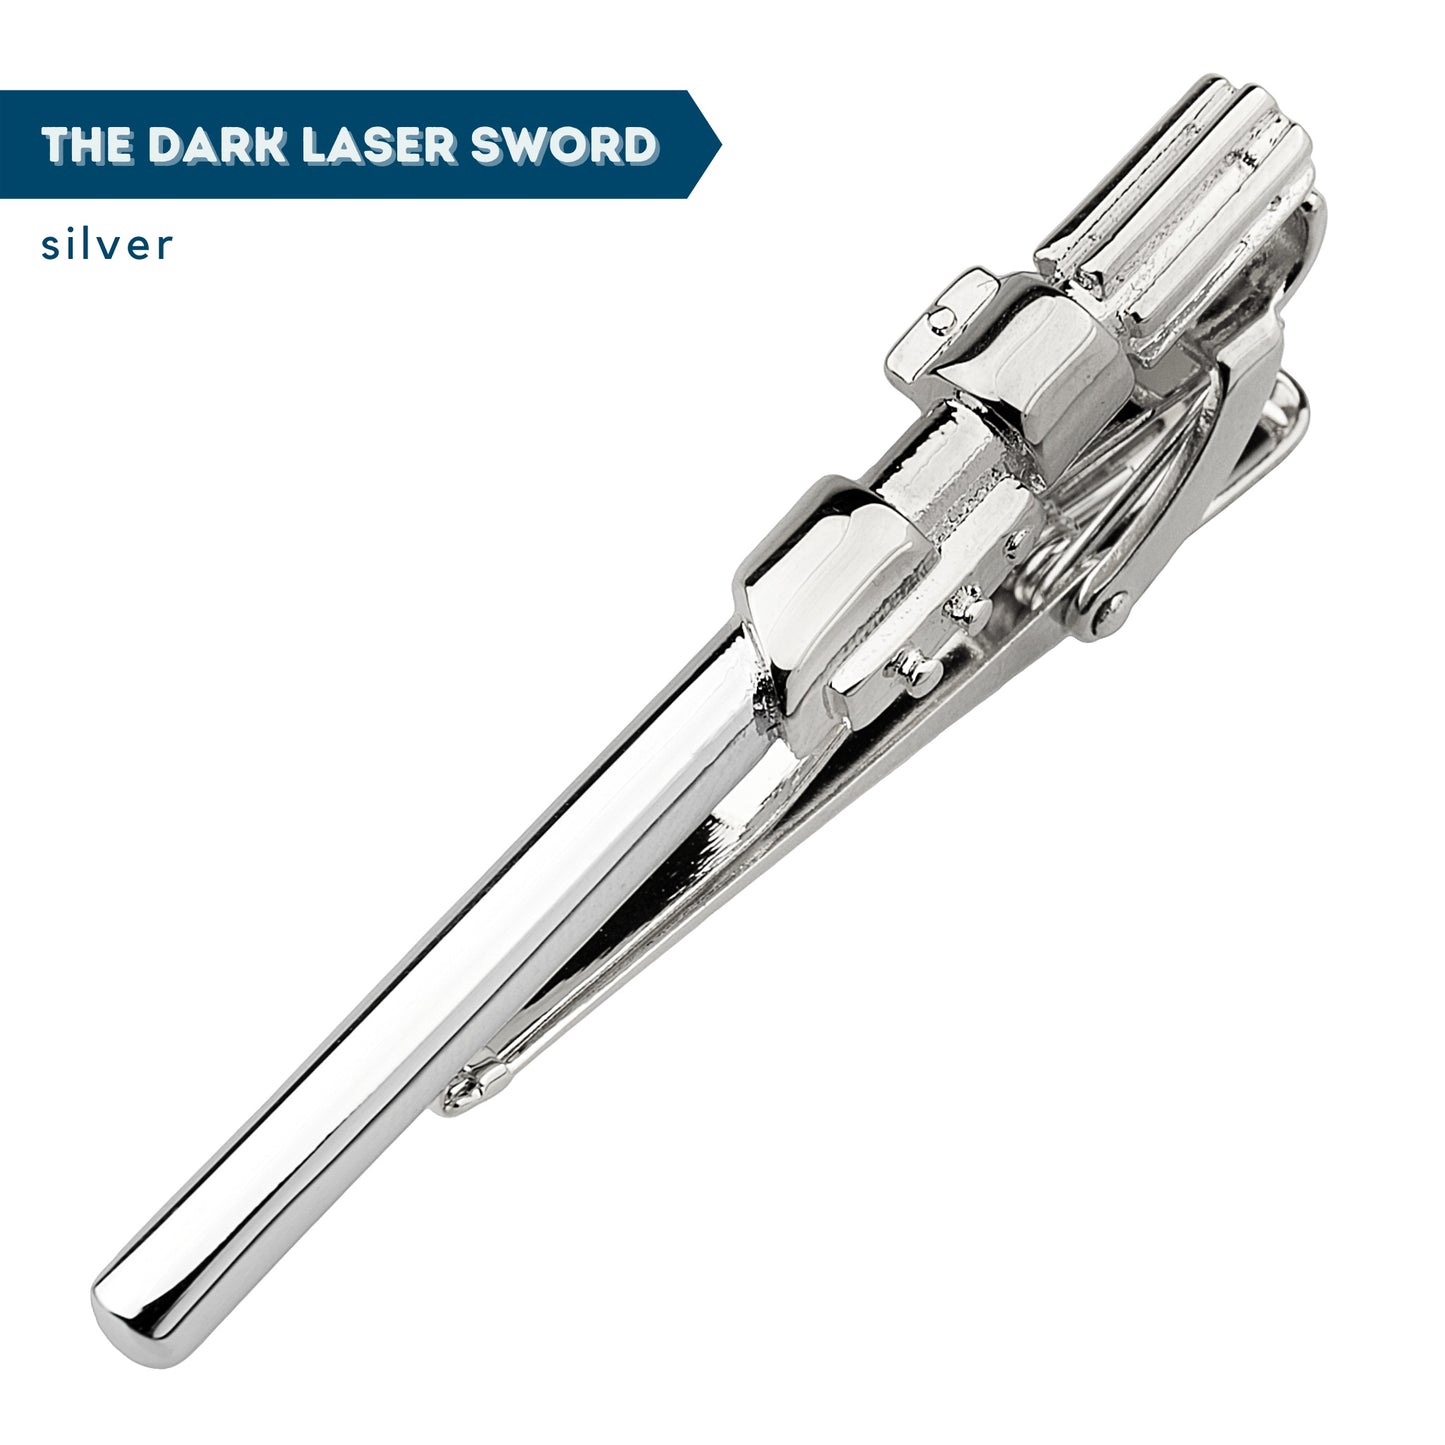 Rebel's Tie + Dark Laser Sword